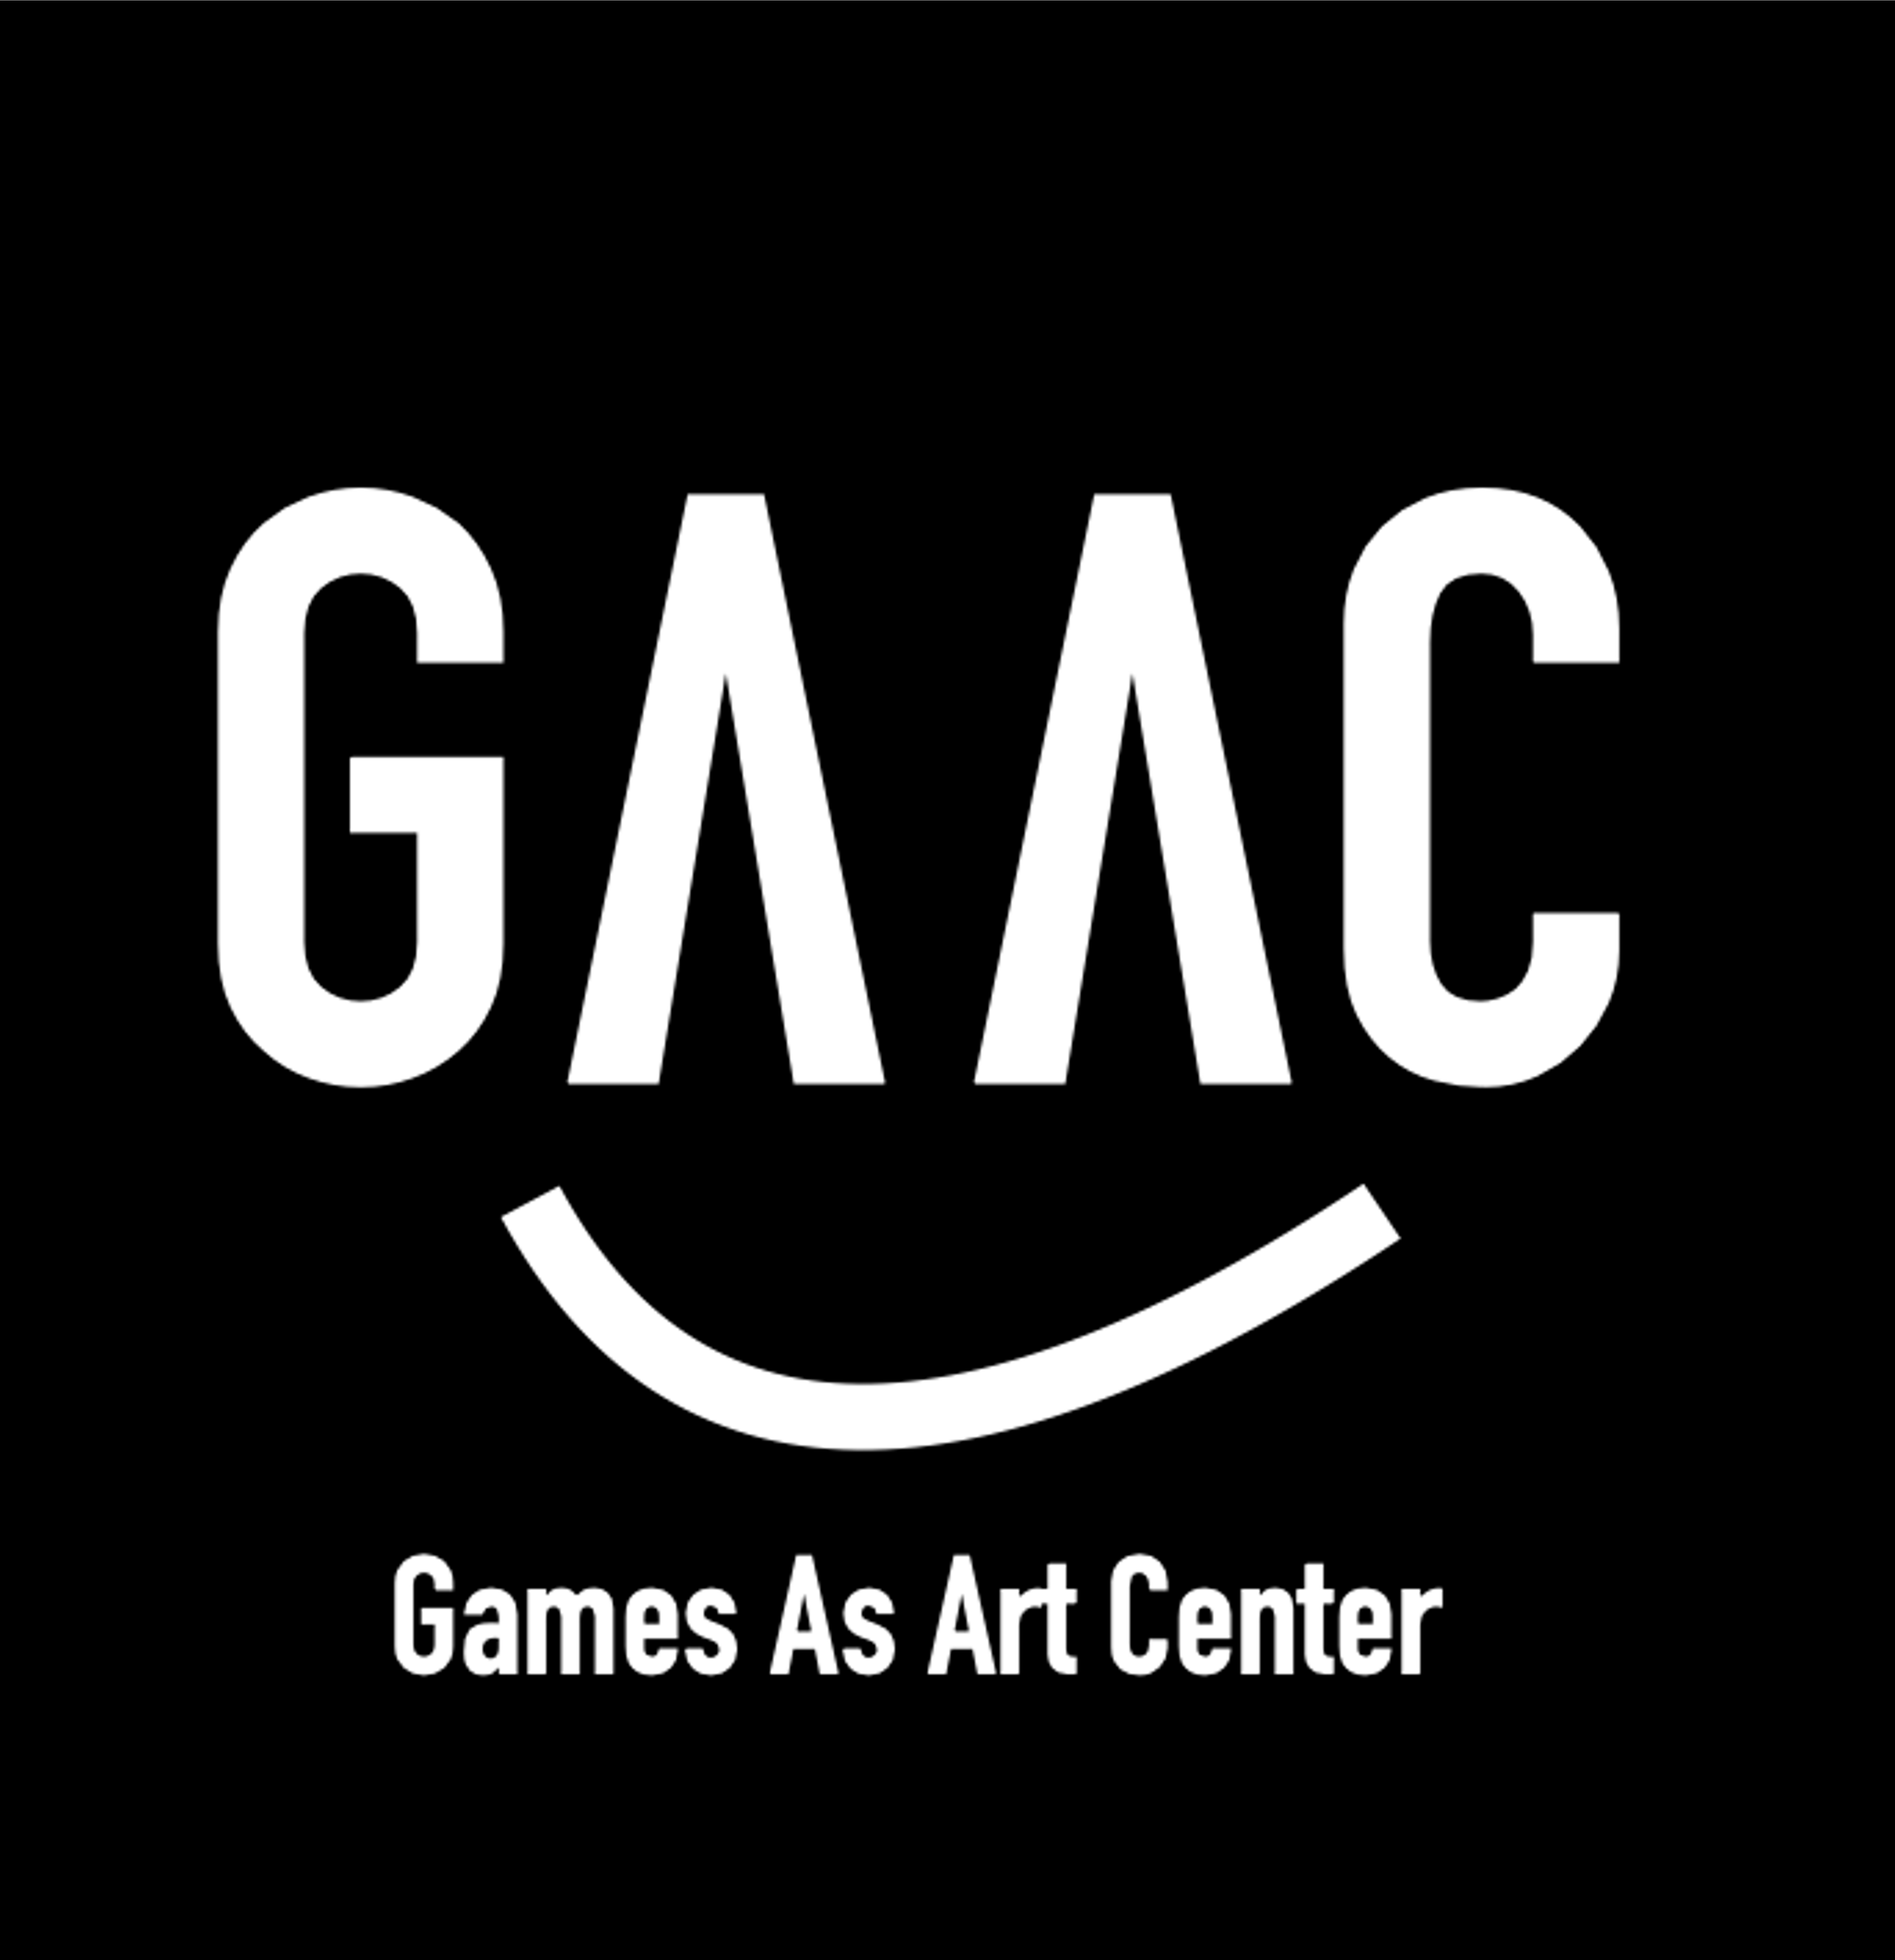 Games as Art Center